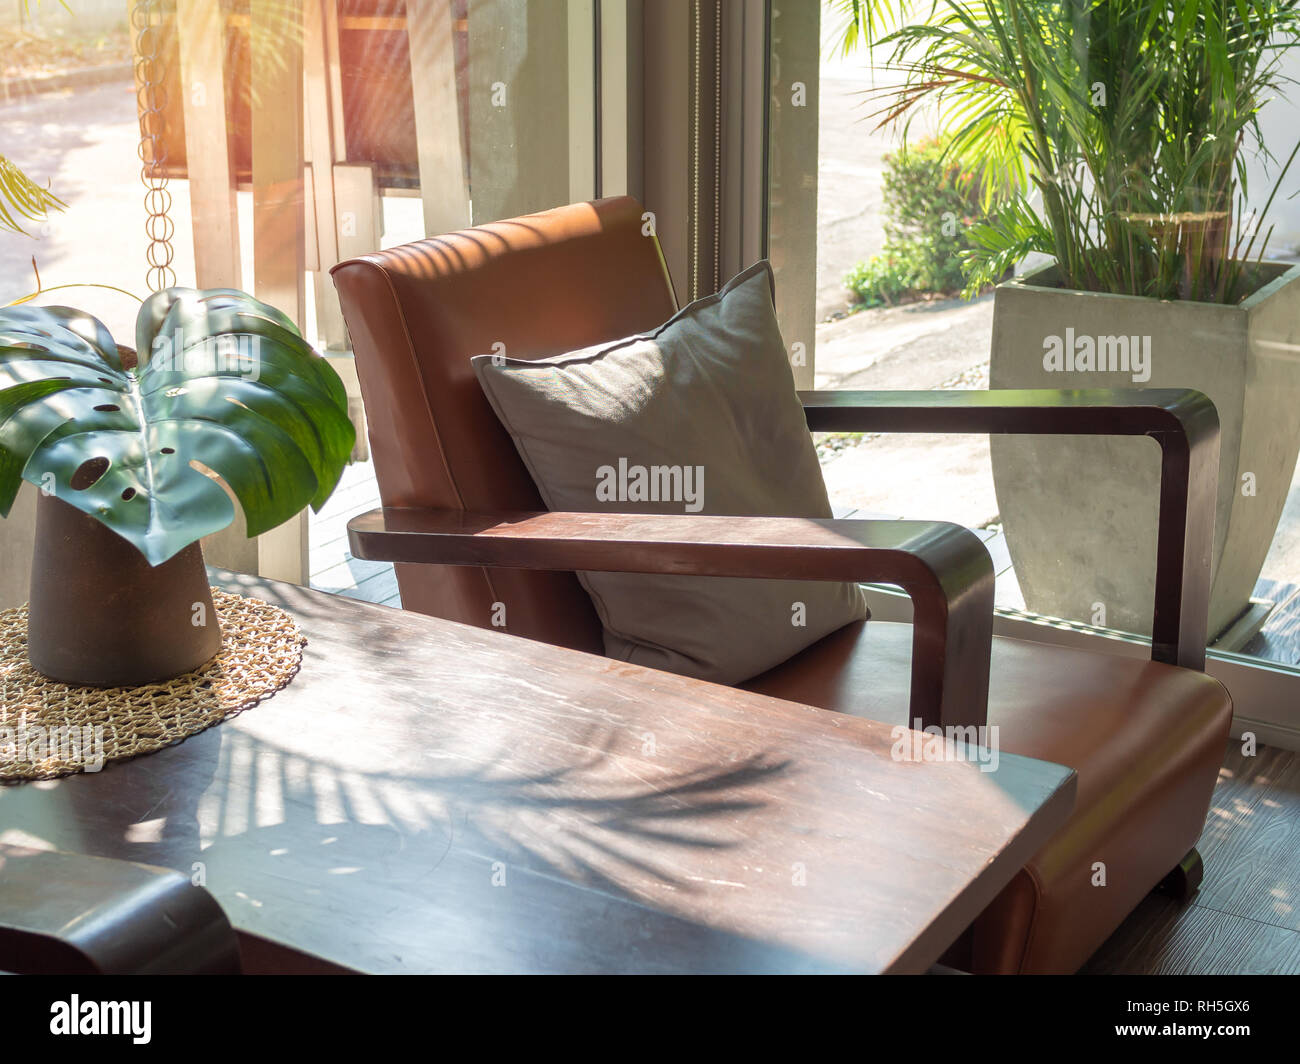 Sofá estilo retro de madera marrón con gris almohada y mesa de madera con  hojas de palmeras verdes en un jarrón cerca de la ventana de vidrio.  Sillones de cuero en la